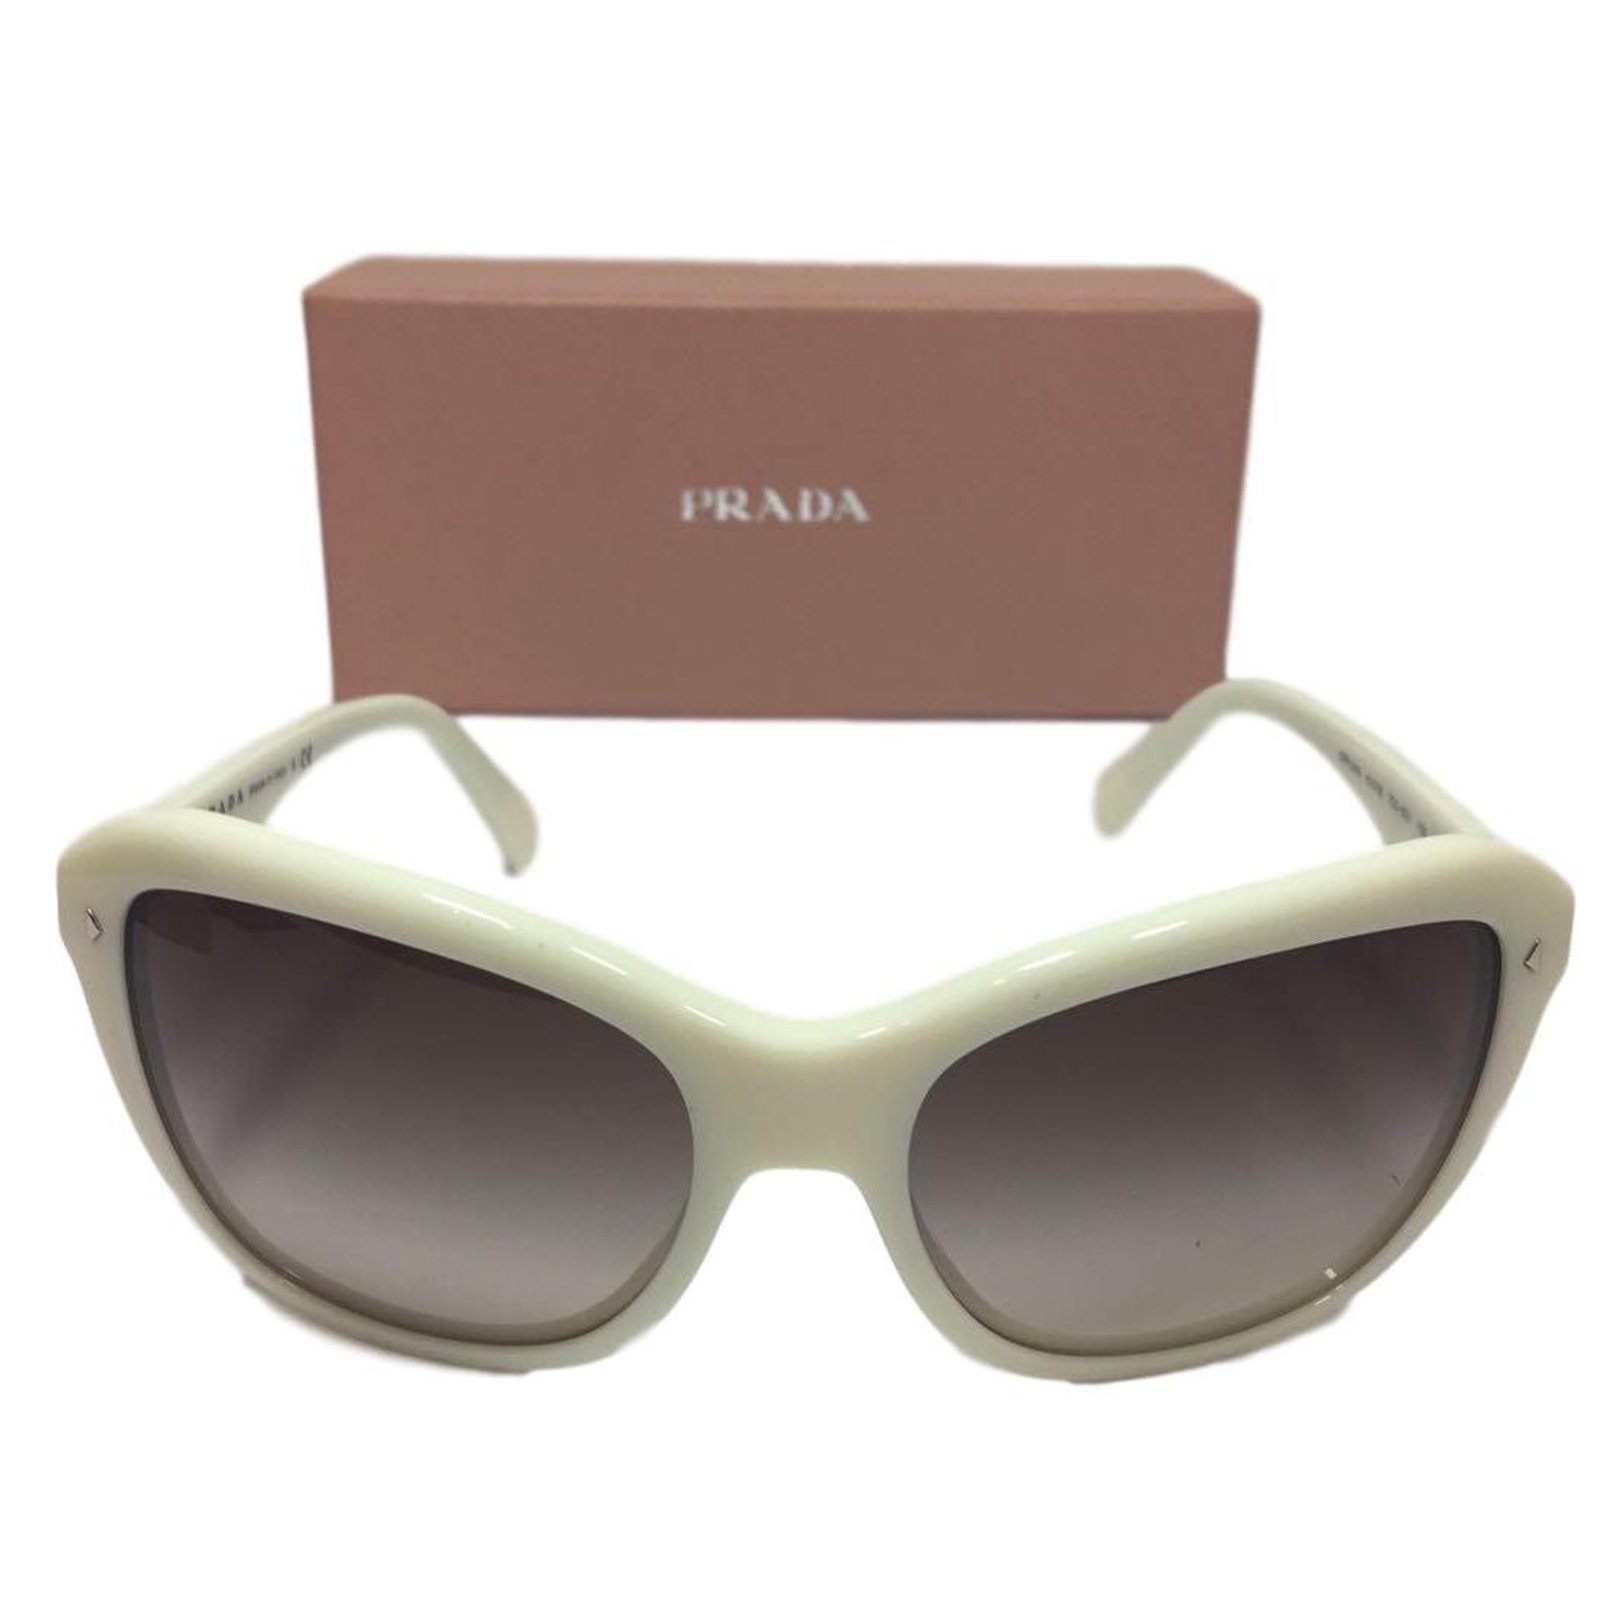 prada sunglasses case india